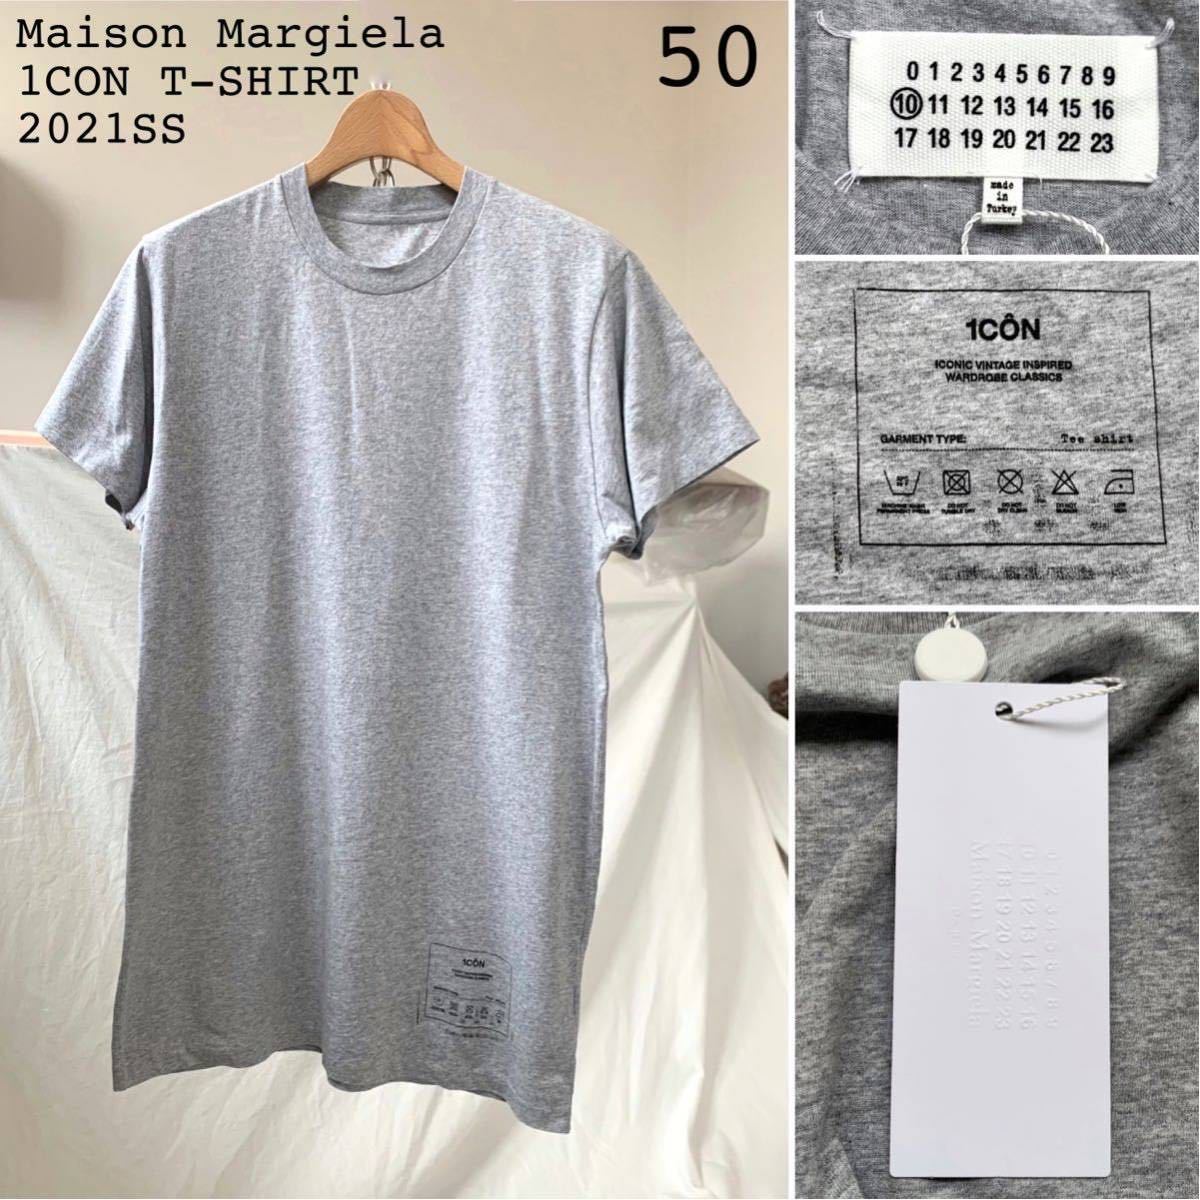 新品 2021SS メゾン マルジェラ 1CON ロゴ Tシャツ 50 定2.75万 霜降りグレー メンズ Maison Margiela メゾンマルジェラ L_画像1